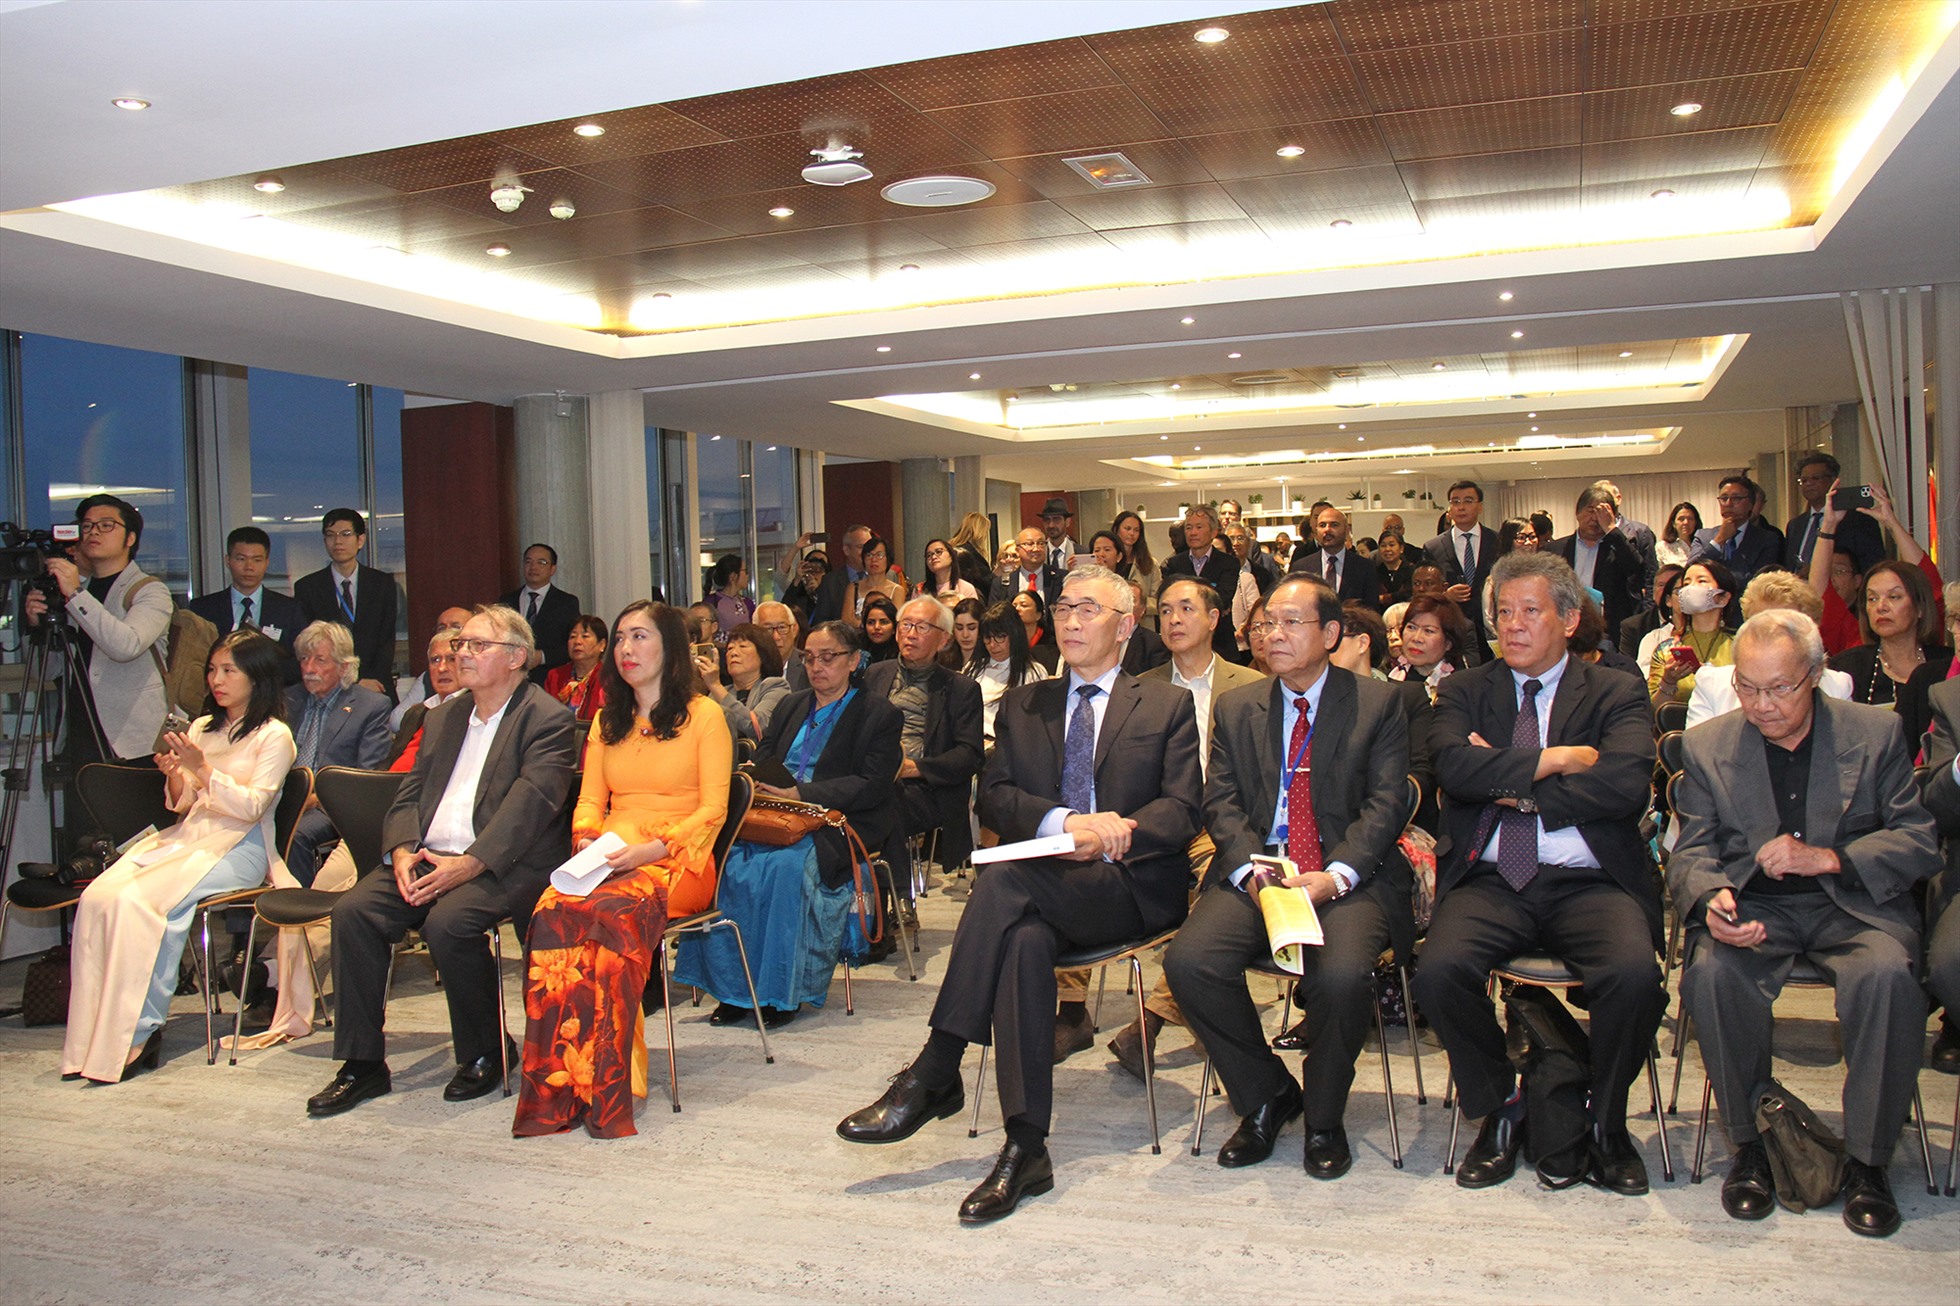 Sự kiện “Hồ Chí Minh: Con người vì hoà bình, danh nhân văn hoá kiệt xuất” tại trụ sở UNESCO. Ảnh: Thanh Hà